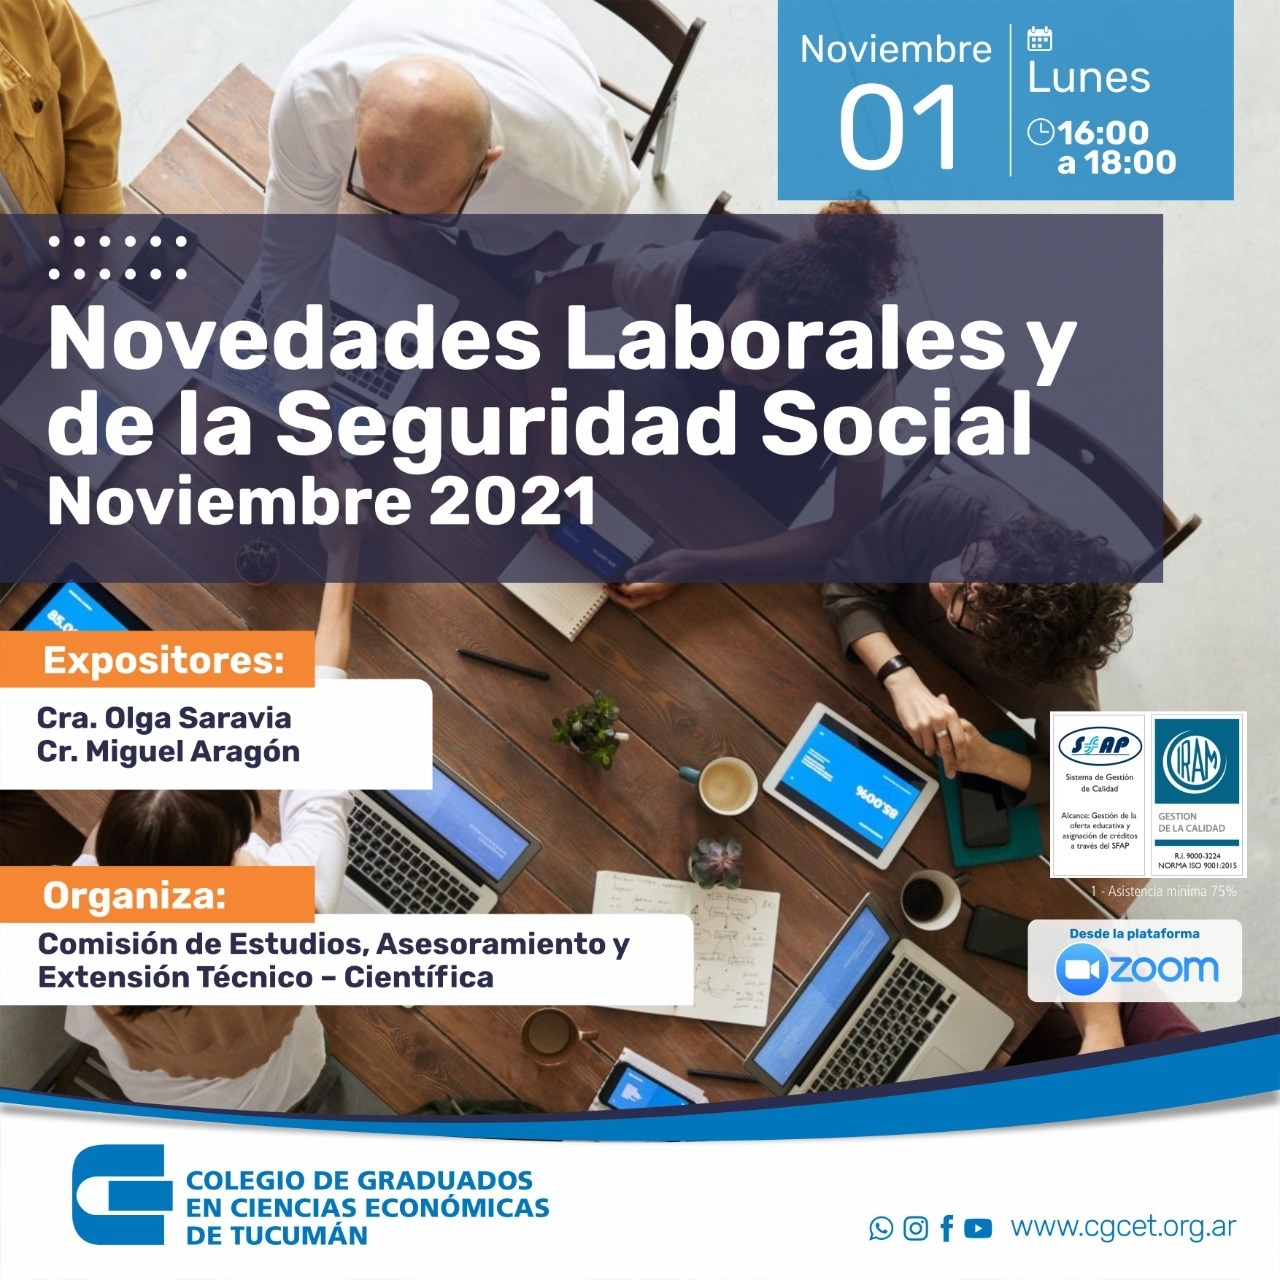 Novedades Laborales y de la Seguridad Social CPCE Jujuy